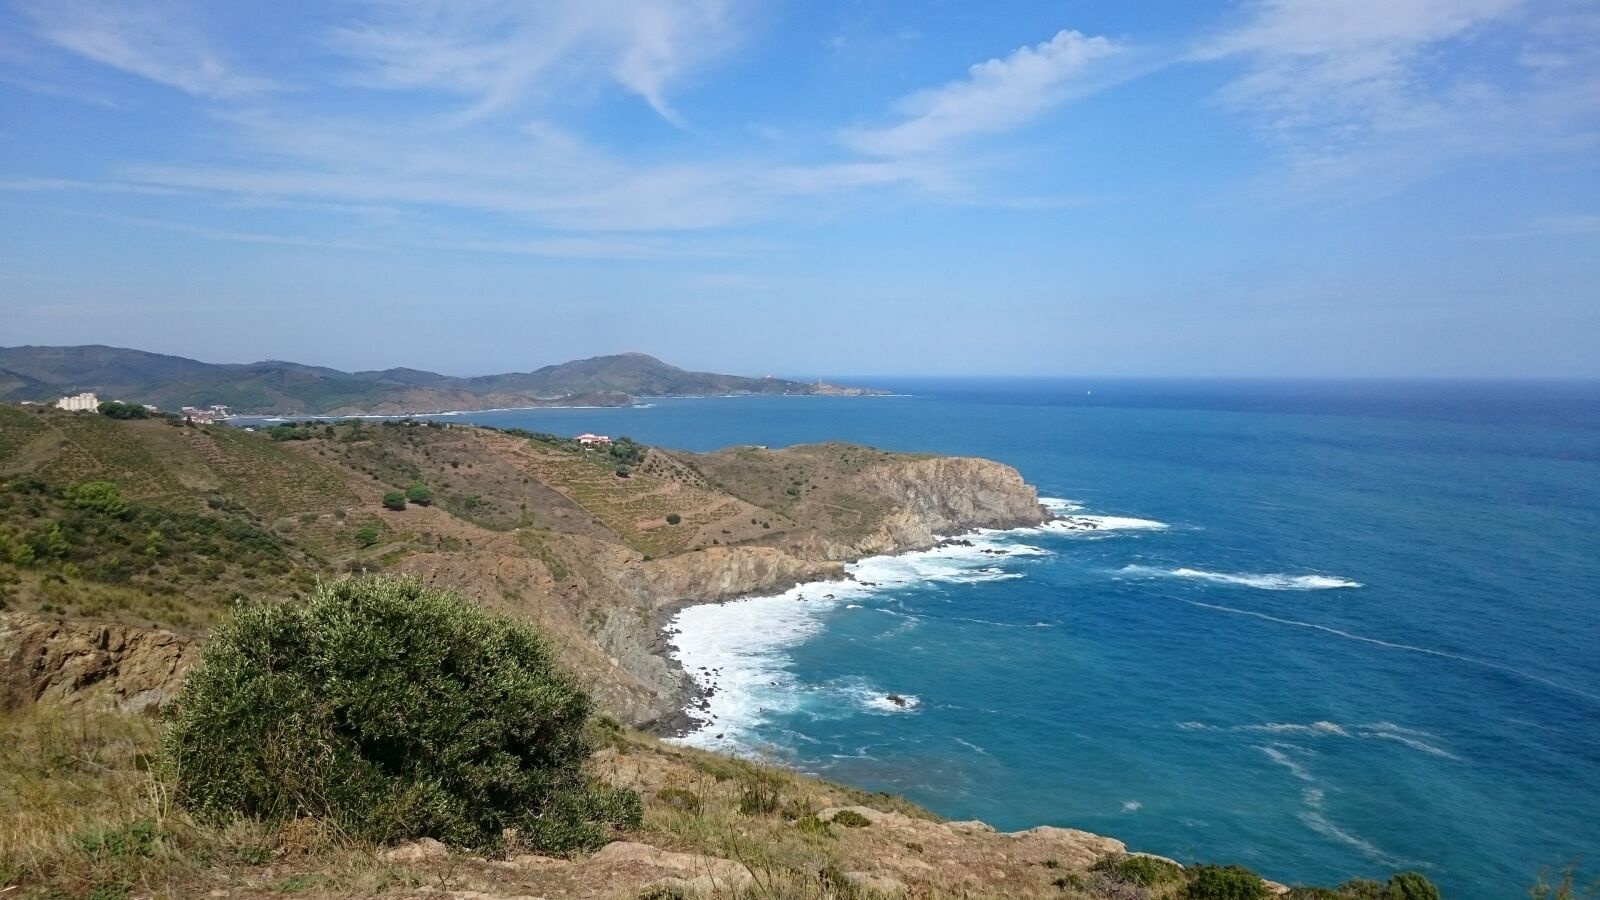 Sony Xperia Z3 sample photo. Coast, sea, rocky coast photography